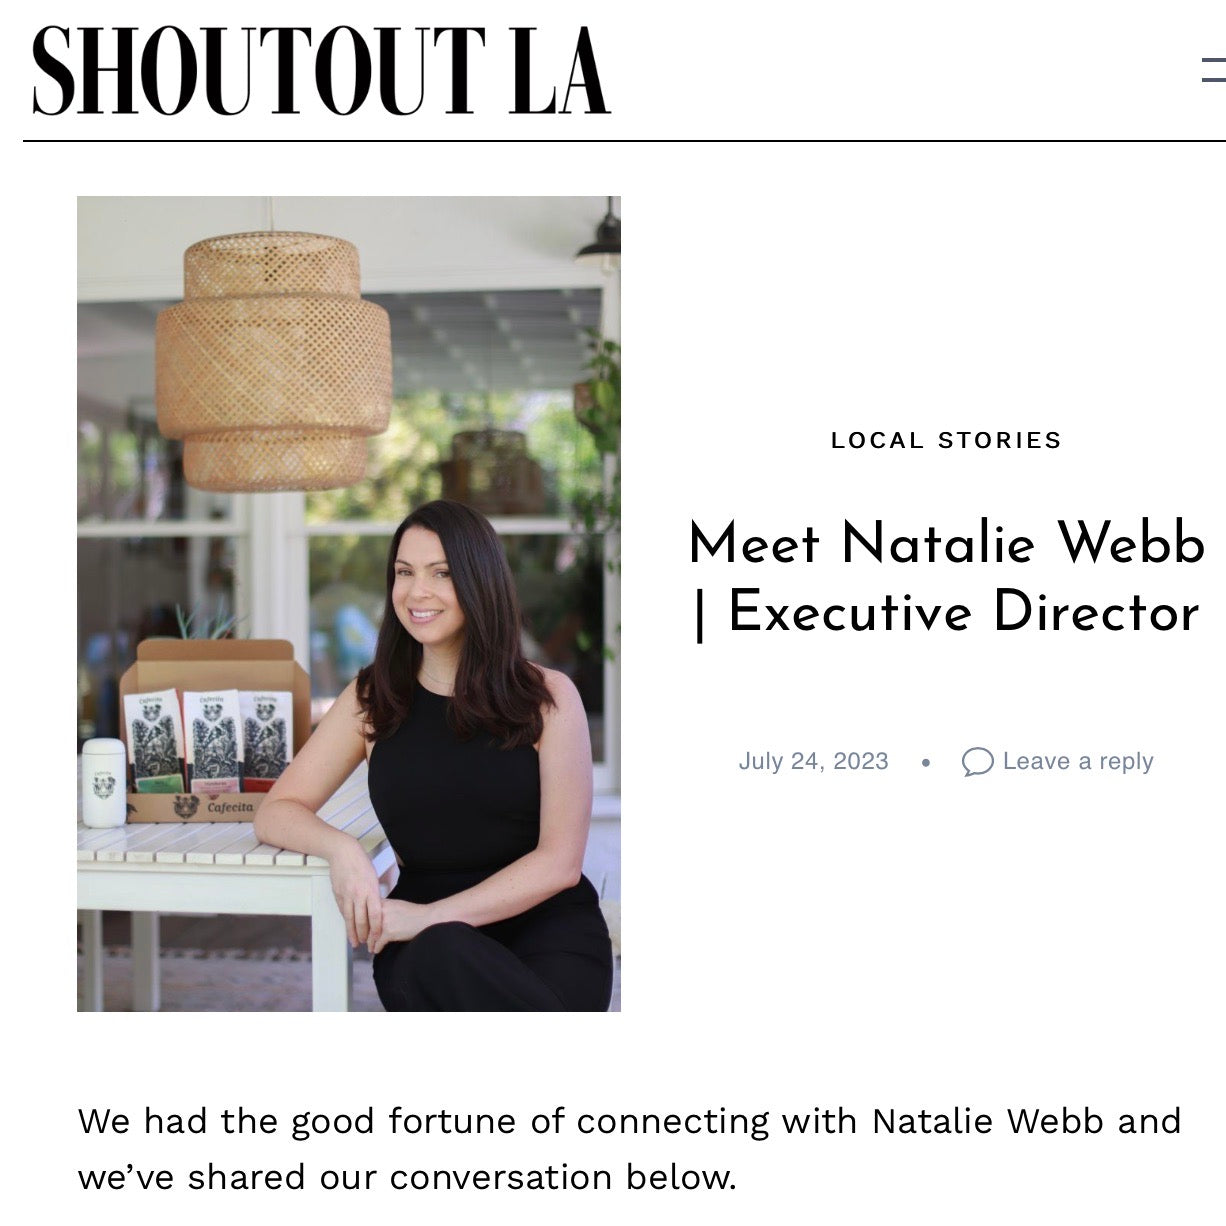 Shoutout LA interviewed Cafecita's founder, Natalie, about our social impact